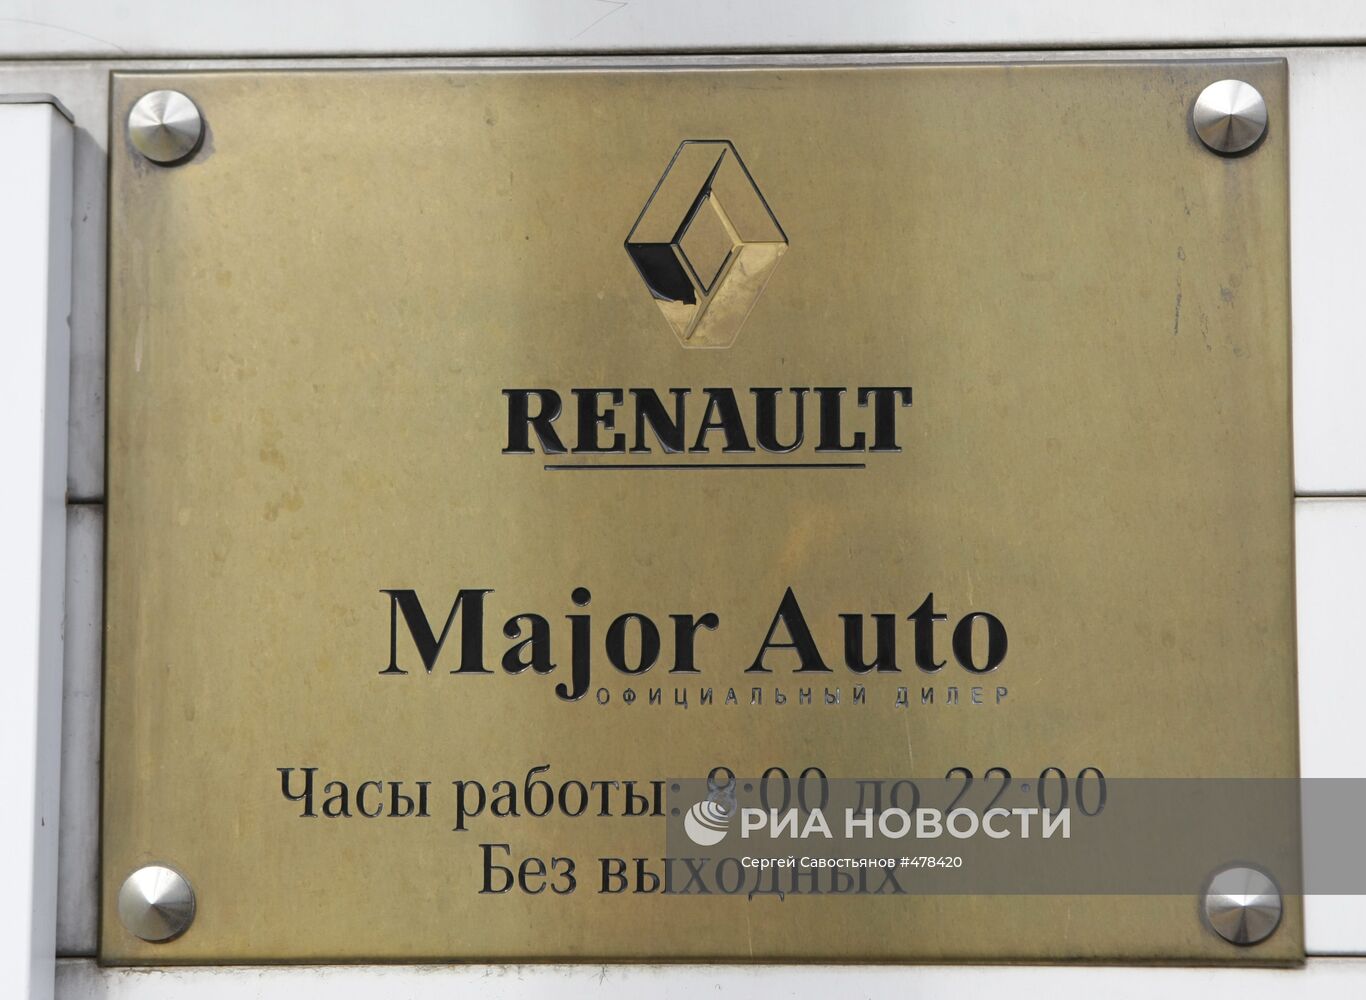 Вывеска компании Major Auto (официальный дилер Renault)